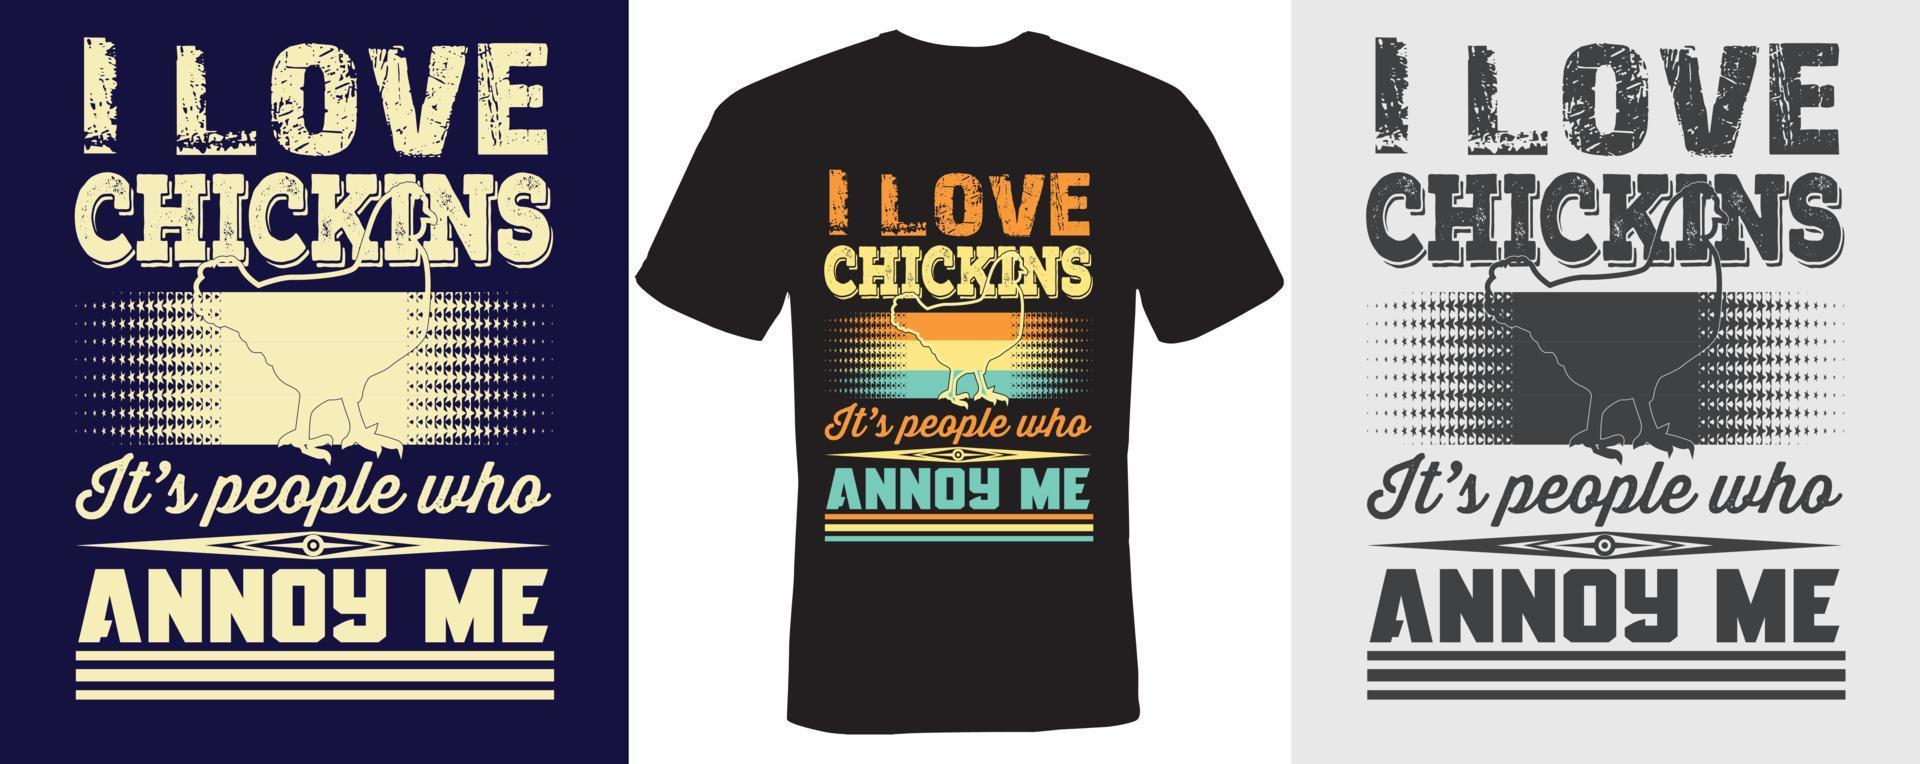 ik hou van chickins, het zijn mensen die me irriteren t-shirtontwerp voor chickins vector